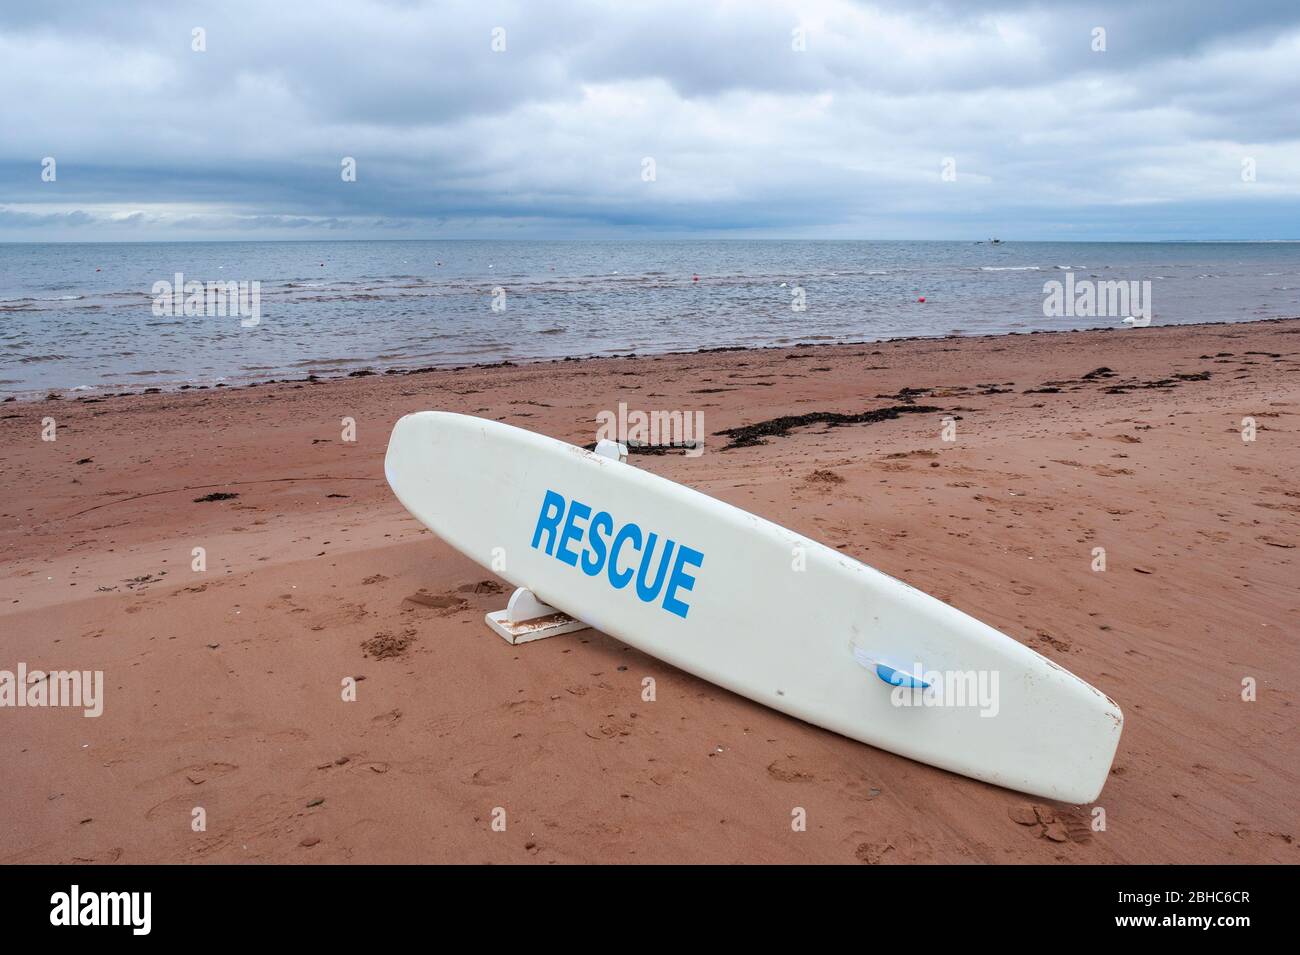 Planche de sauvetage sur une plage déserte en bord de mer. Eaux calmes sous un ciel couvert. North Rustico Beach, parc national de l'Île-du-Prince-Édouard, Canada Banque D'Images